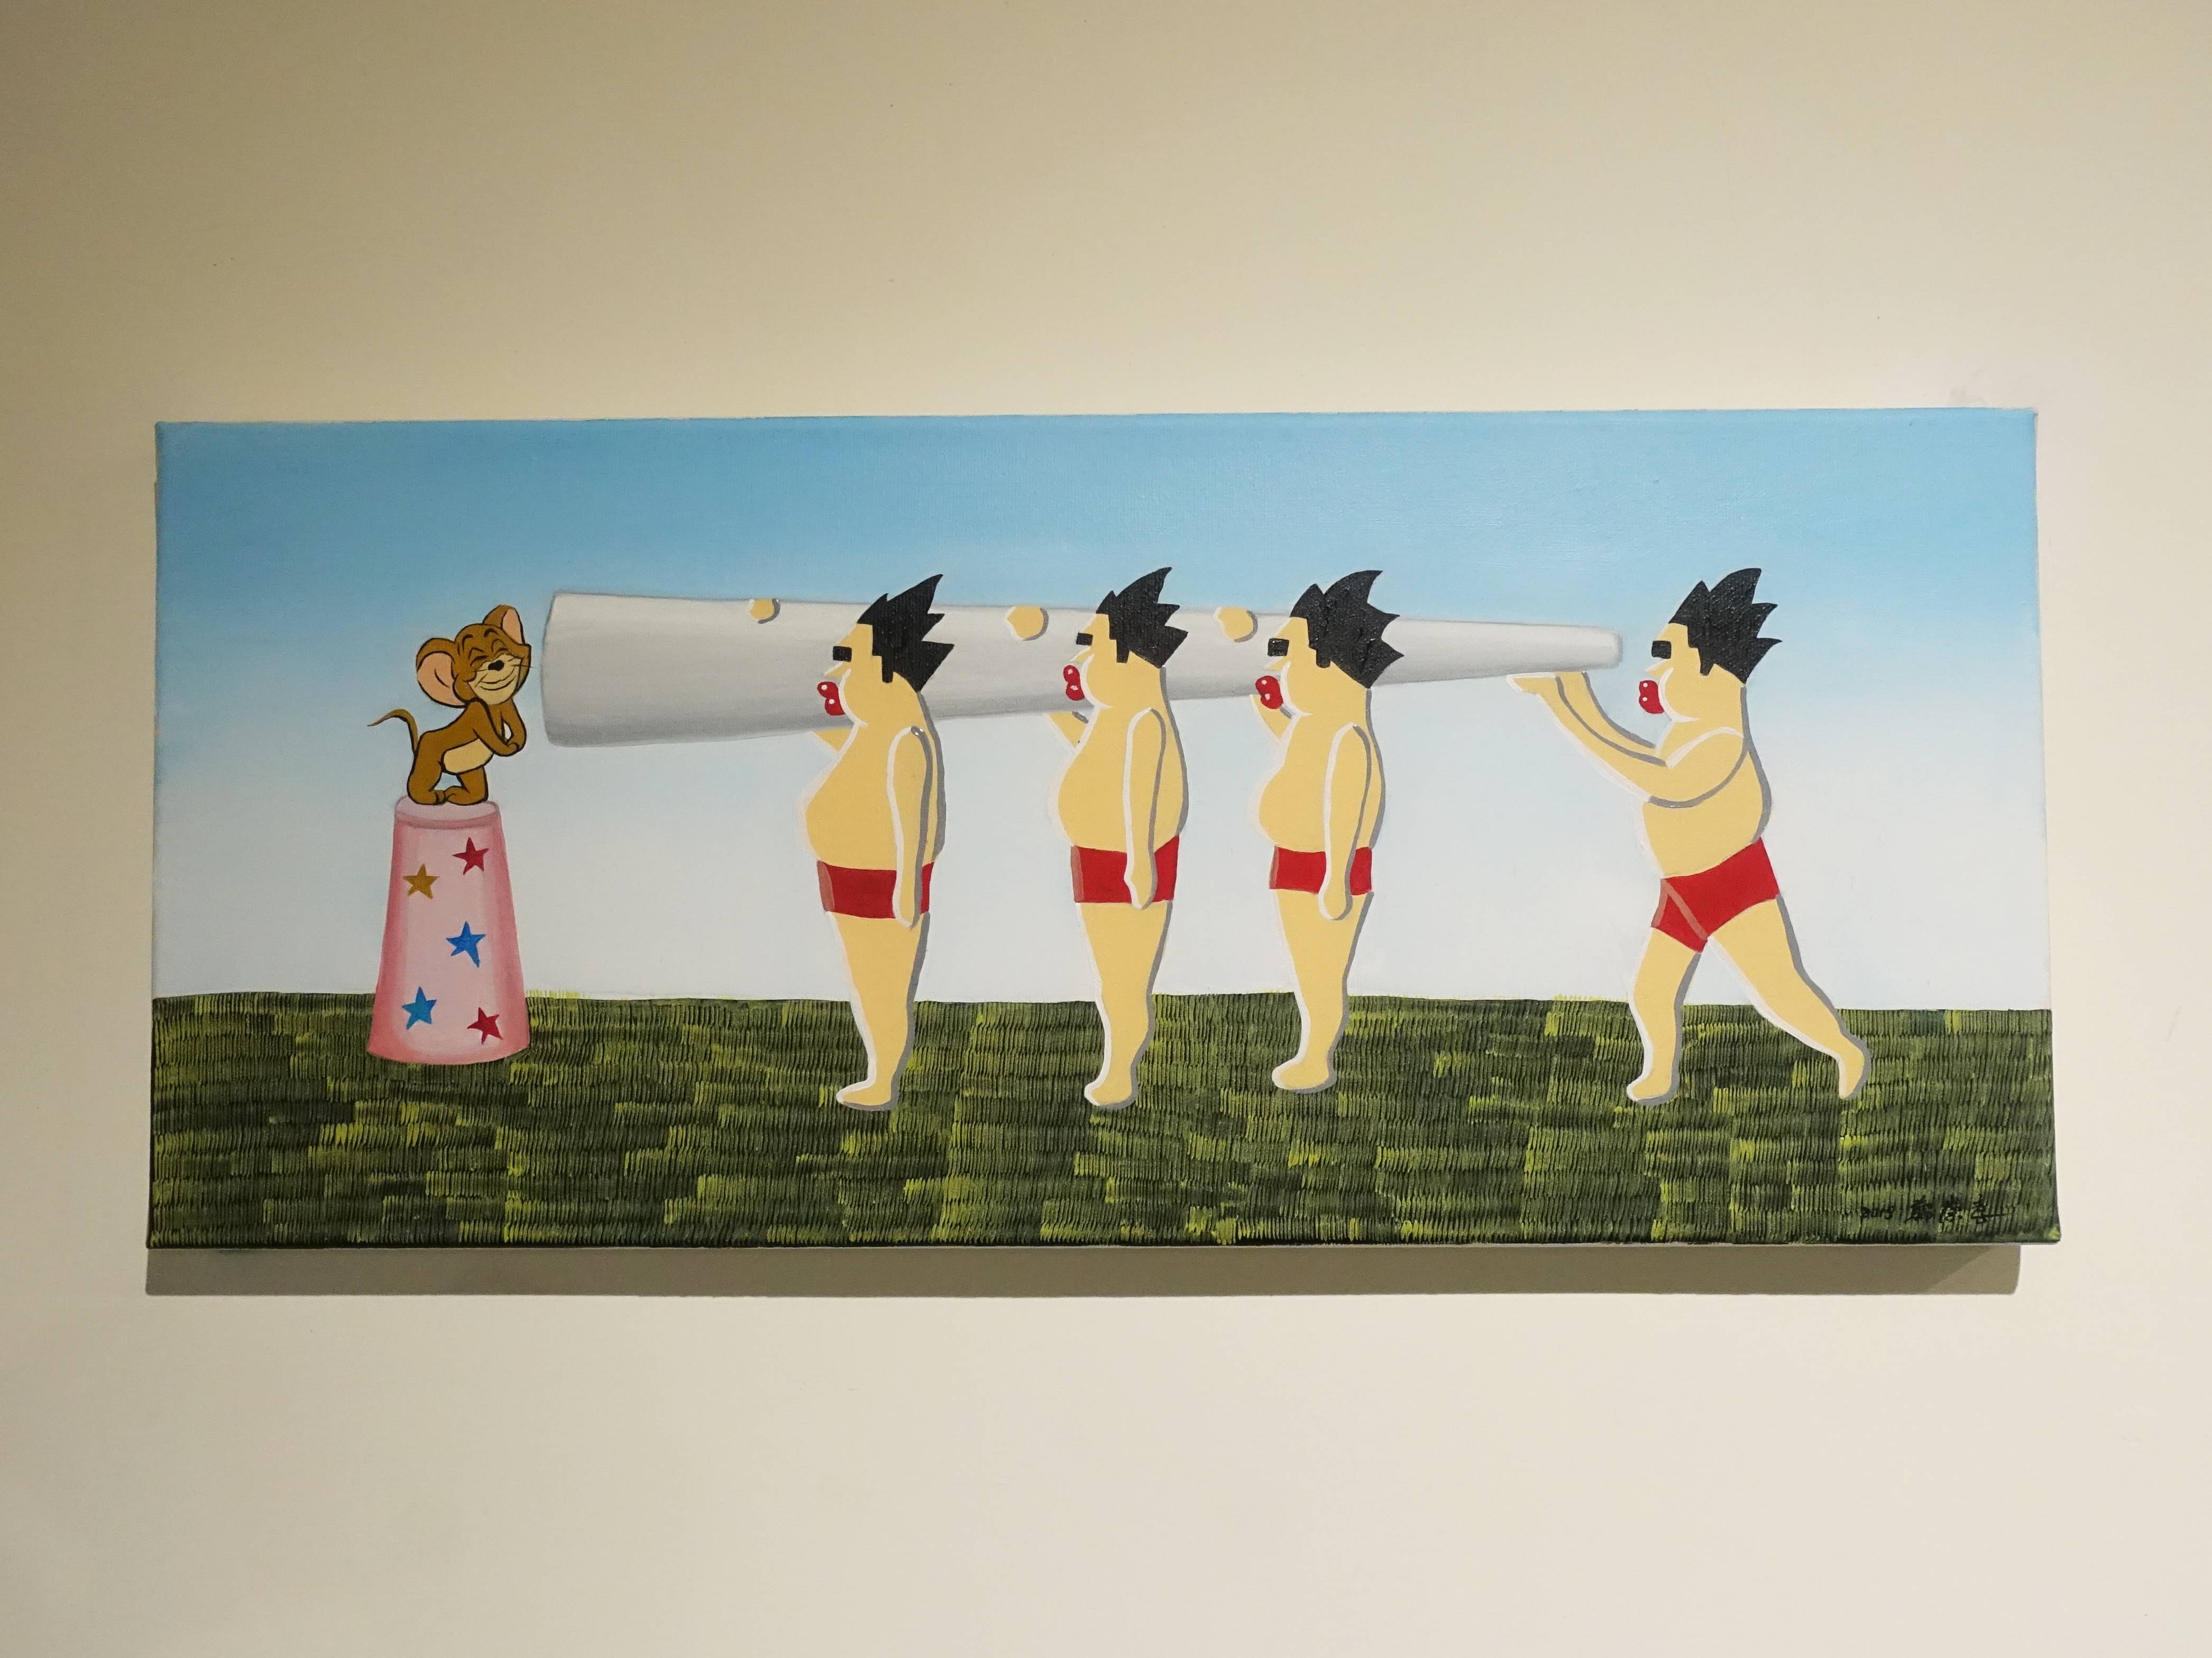 鄭崇孝，《有隻老鼠叫傑利》，22 x 50 cm，油彩畫布 ，2019。